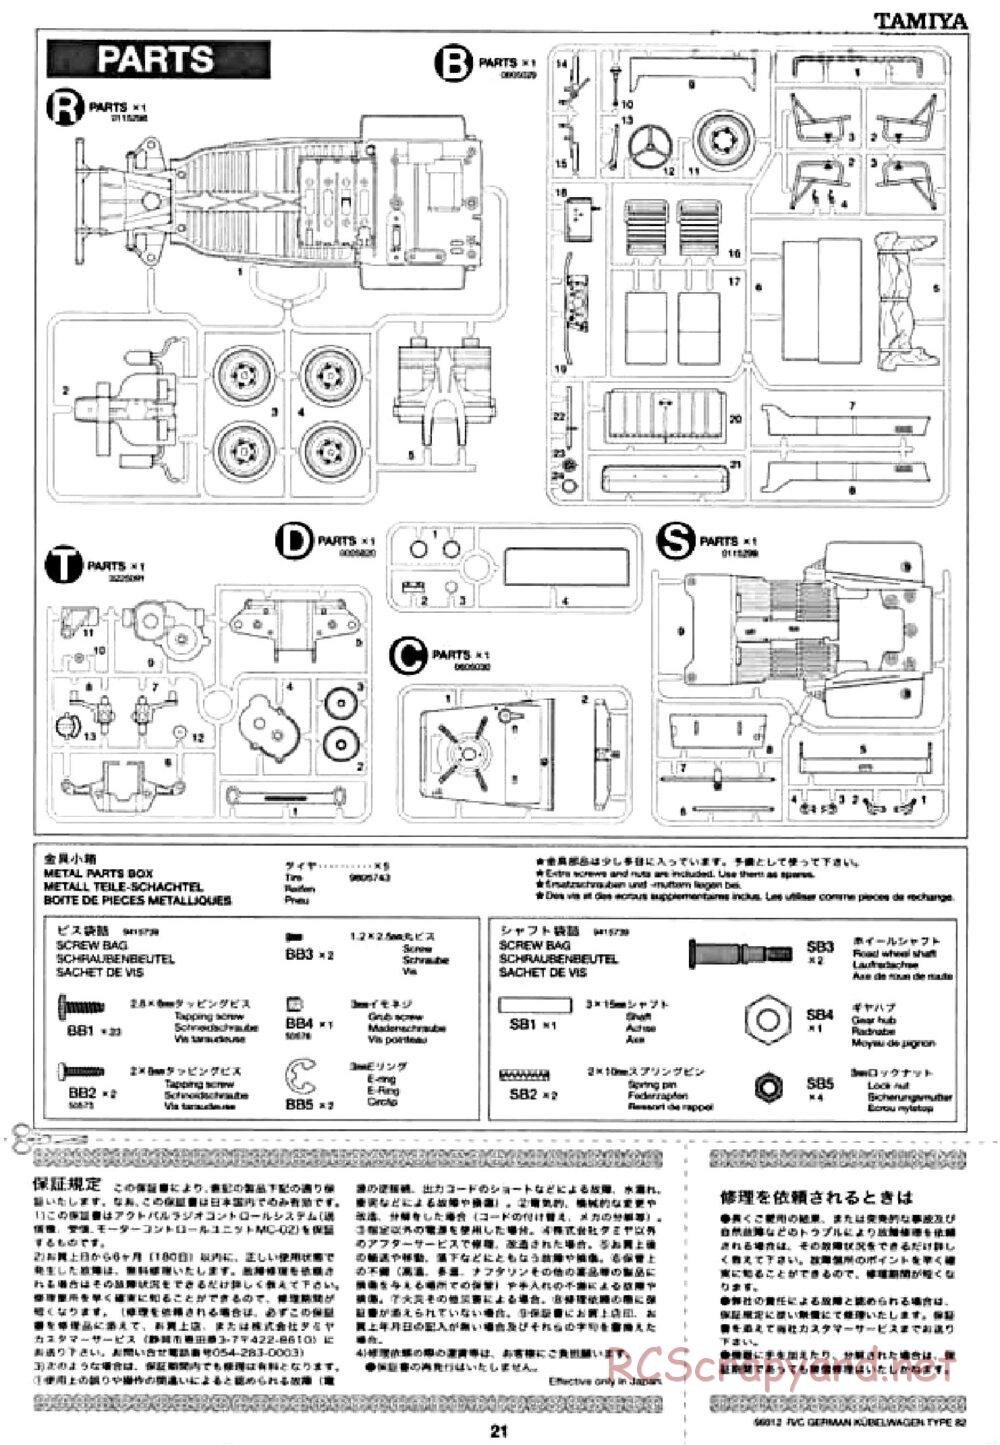 Tamiya - Kubelwagen Type 82 Chassis - Manual - Page 21